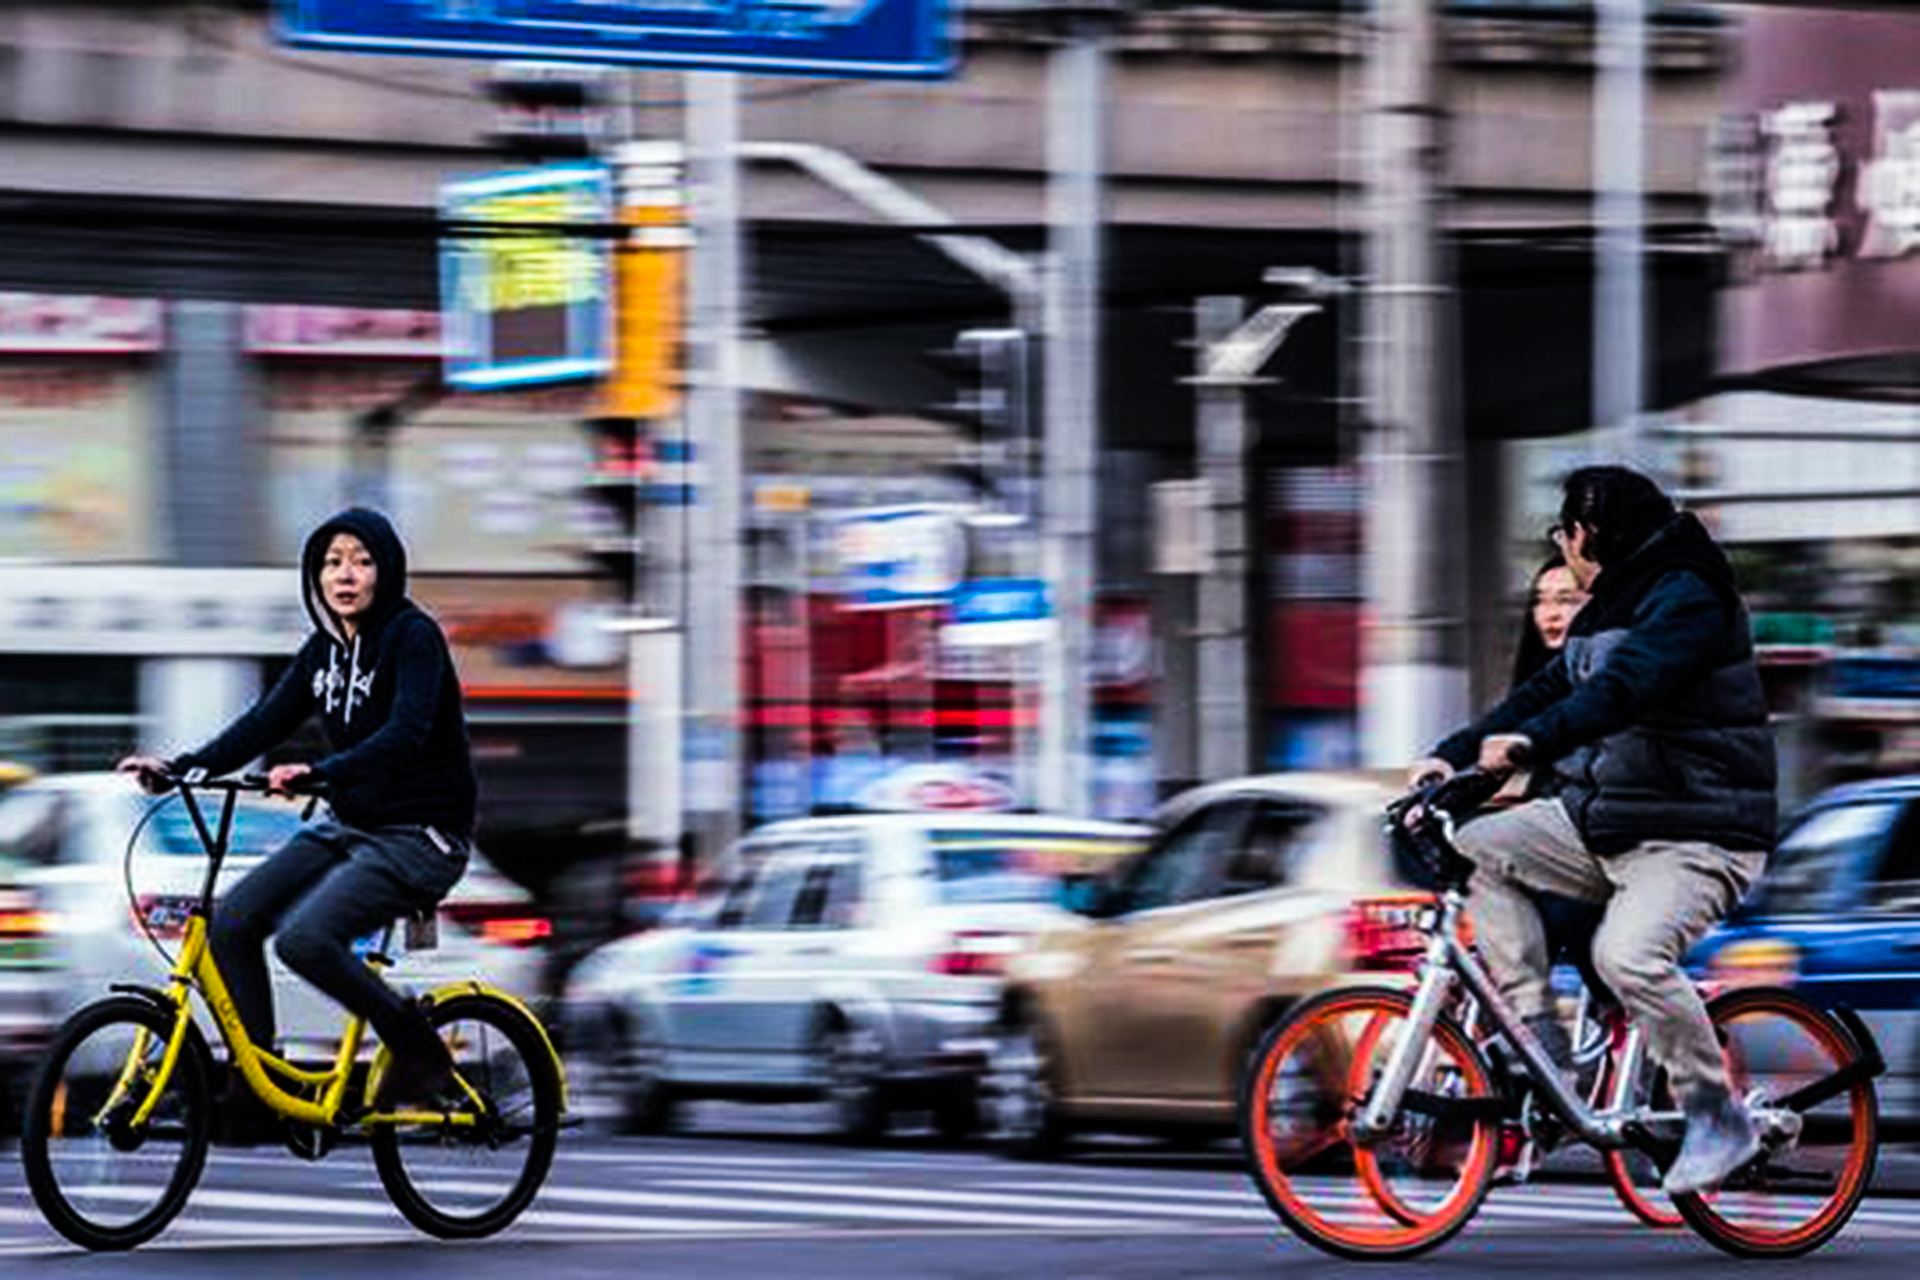 共用單車如何發展考驗城市管理